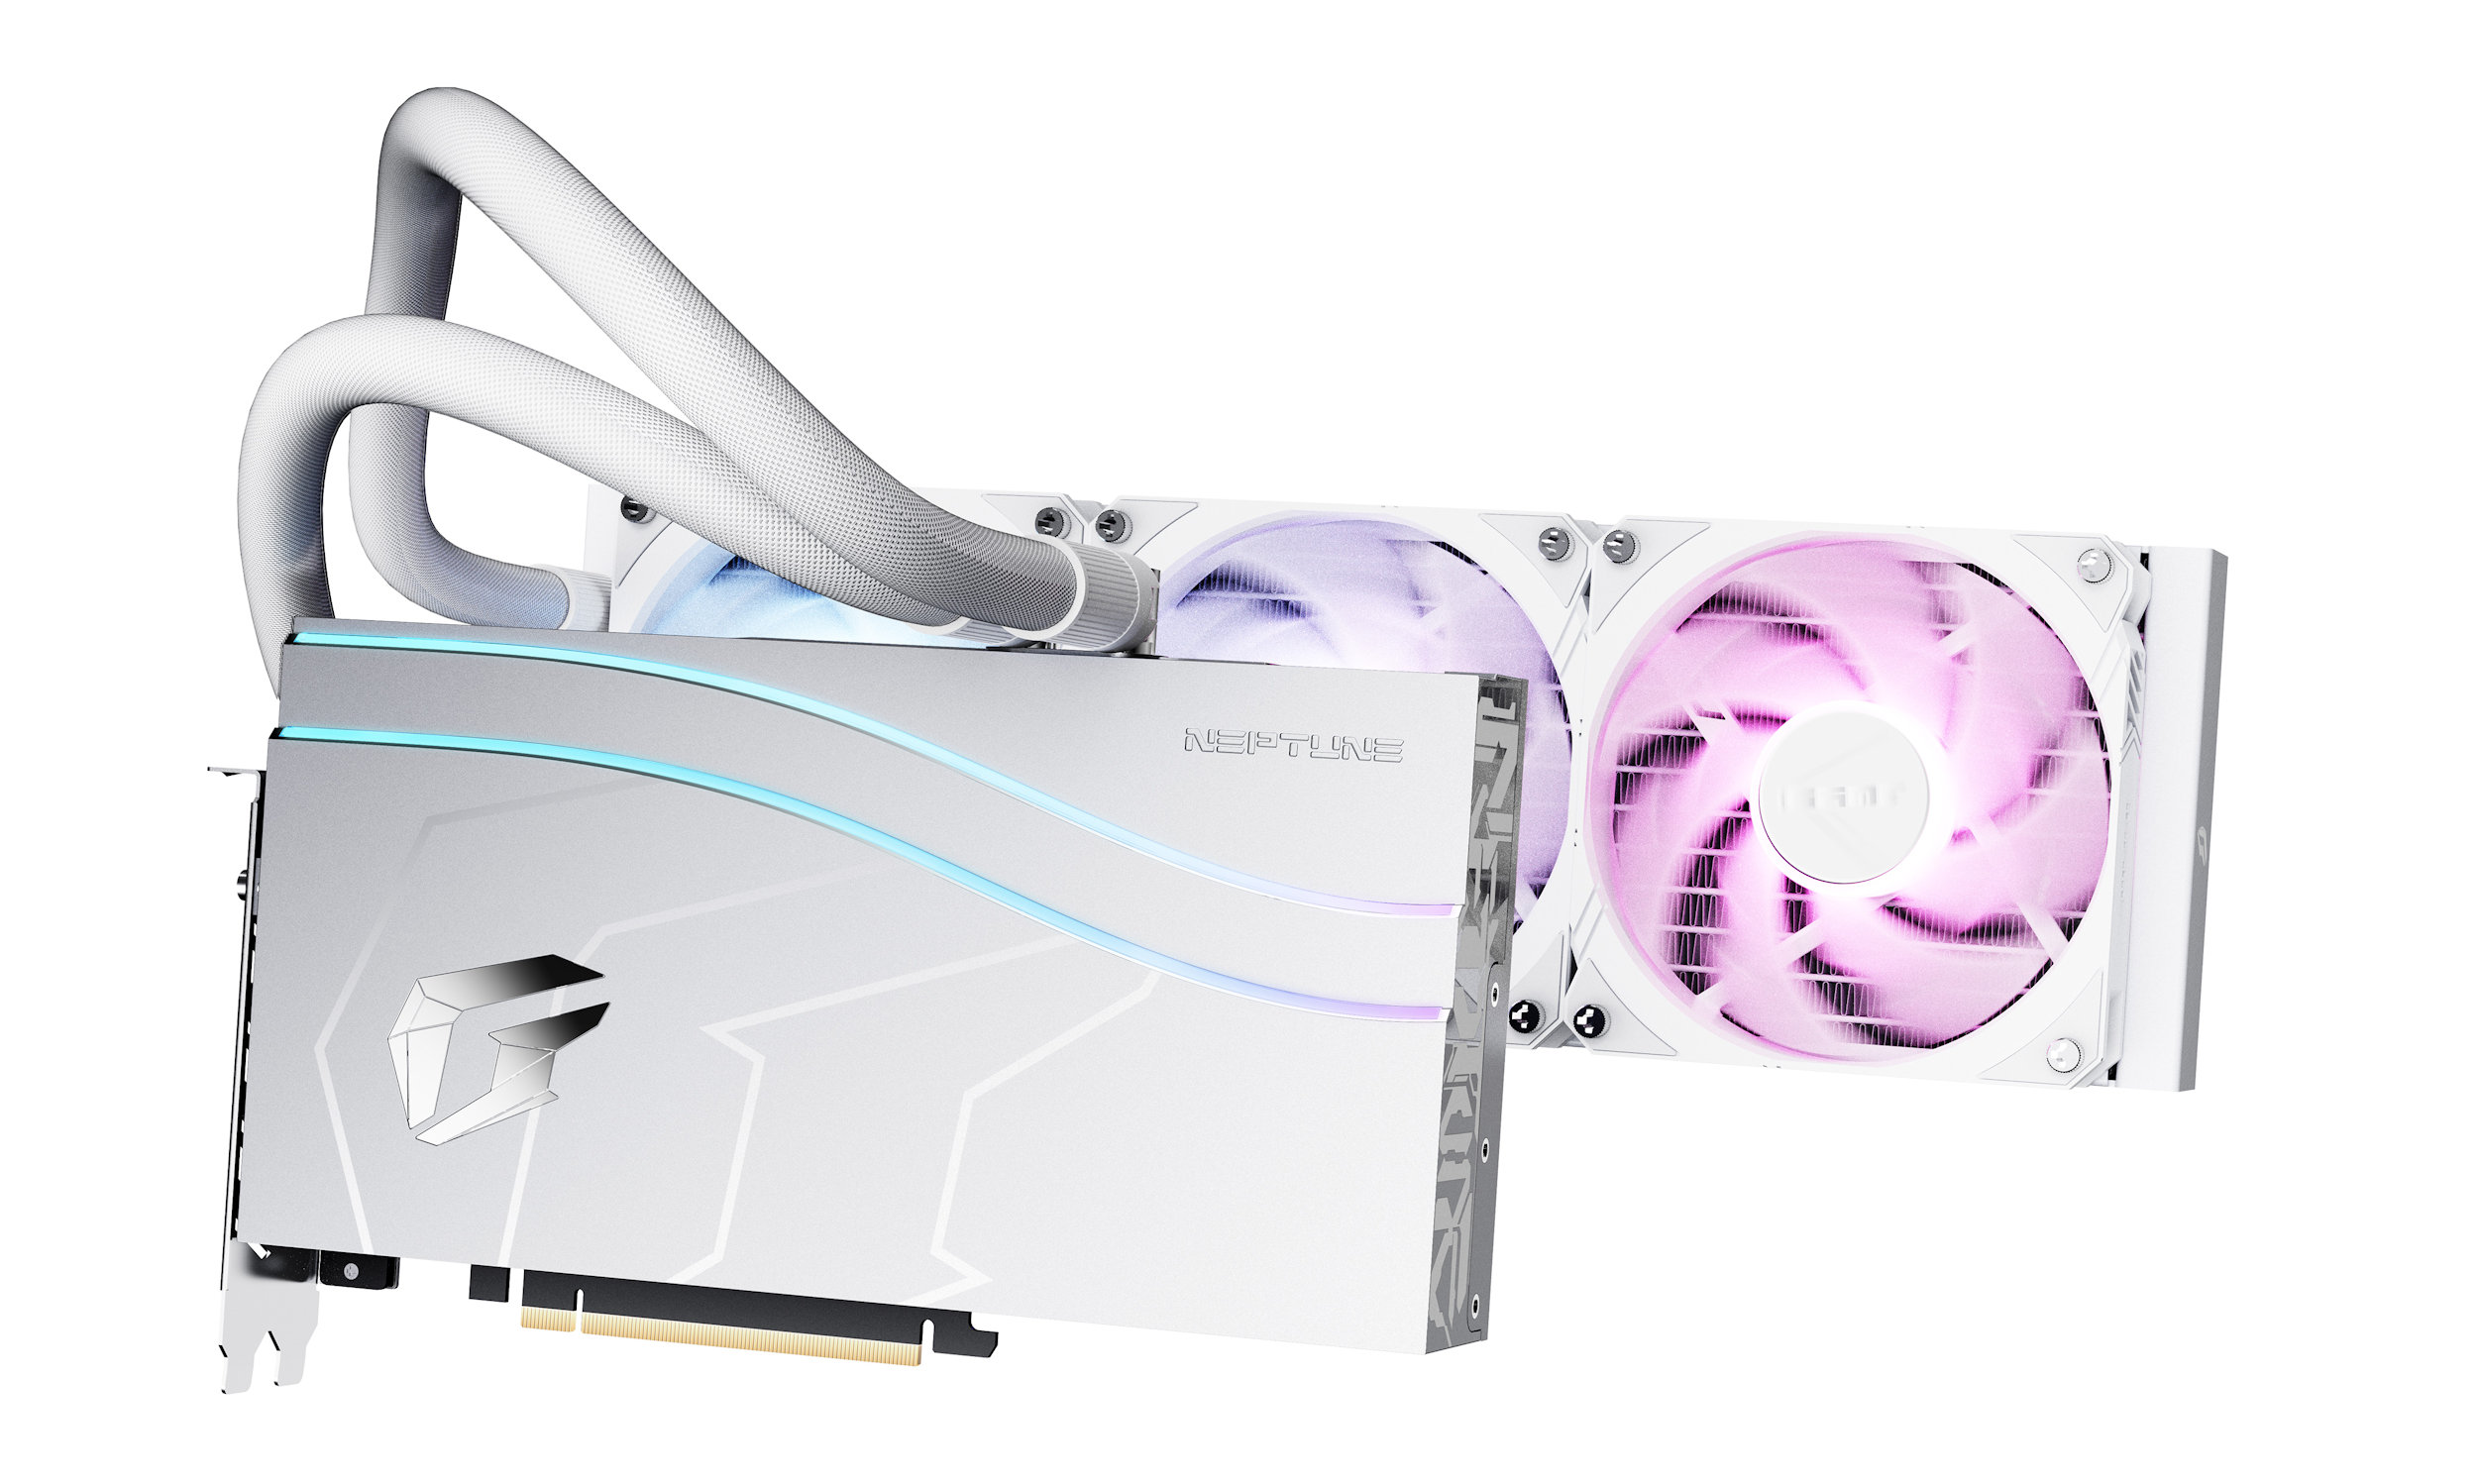 Colorful iGame Neptune Графический процессор RTX 4000 белого и розового цвета